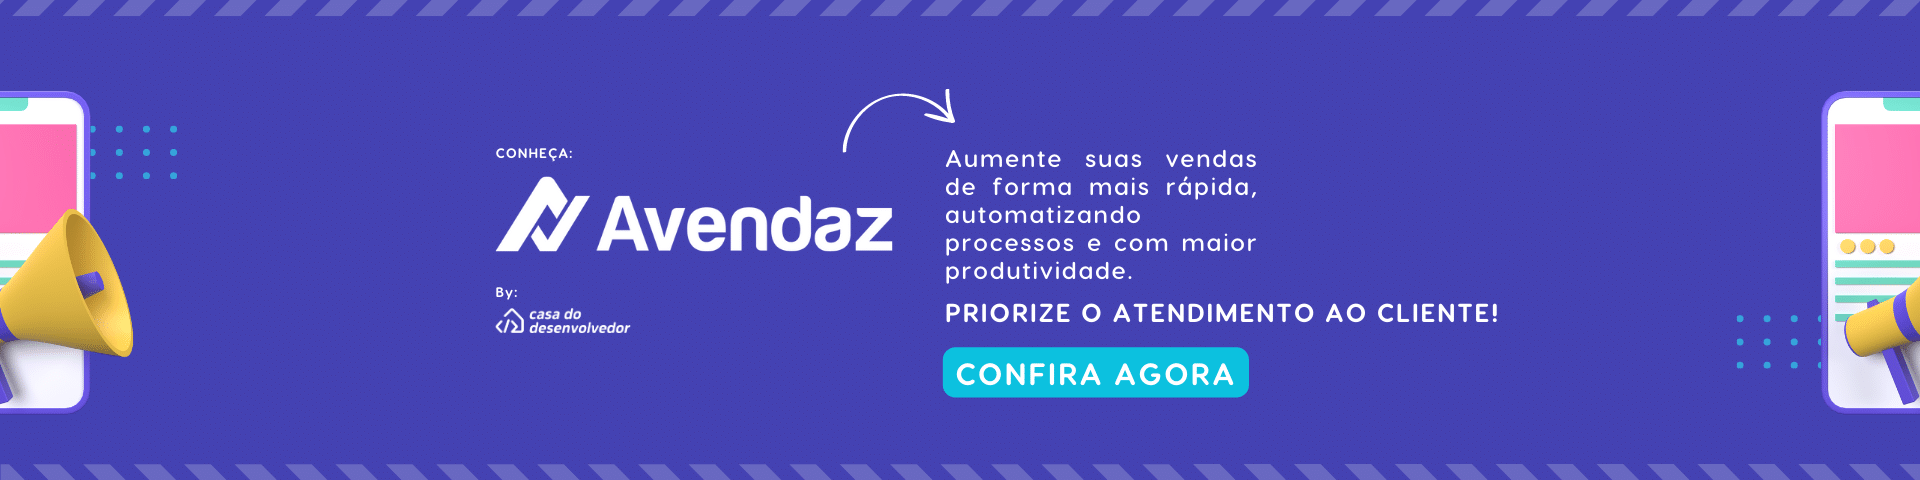 Descrição: imagem convite para conhecer a AVENDAZ, empresa parceira da Casa do Desenvolvedor. Clique e confira!